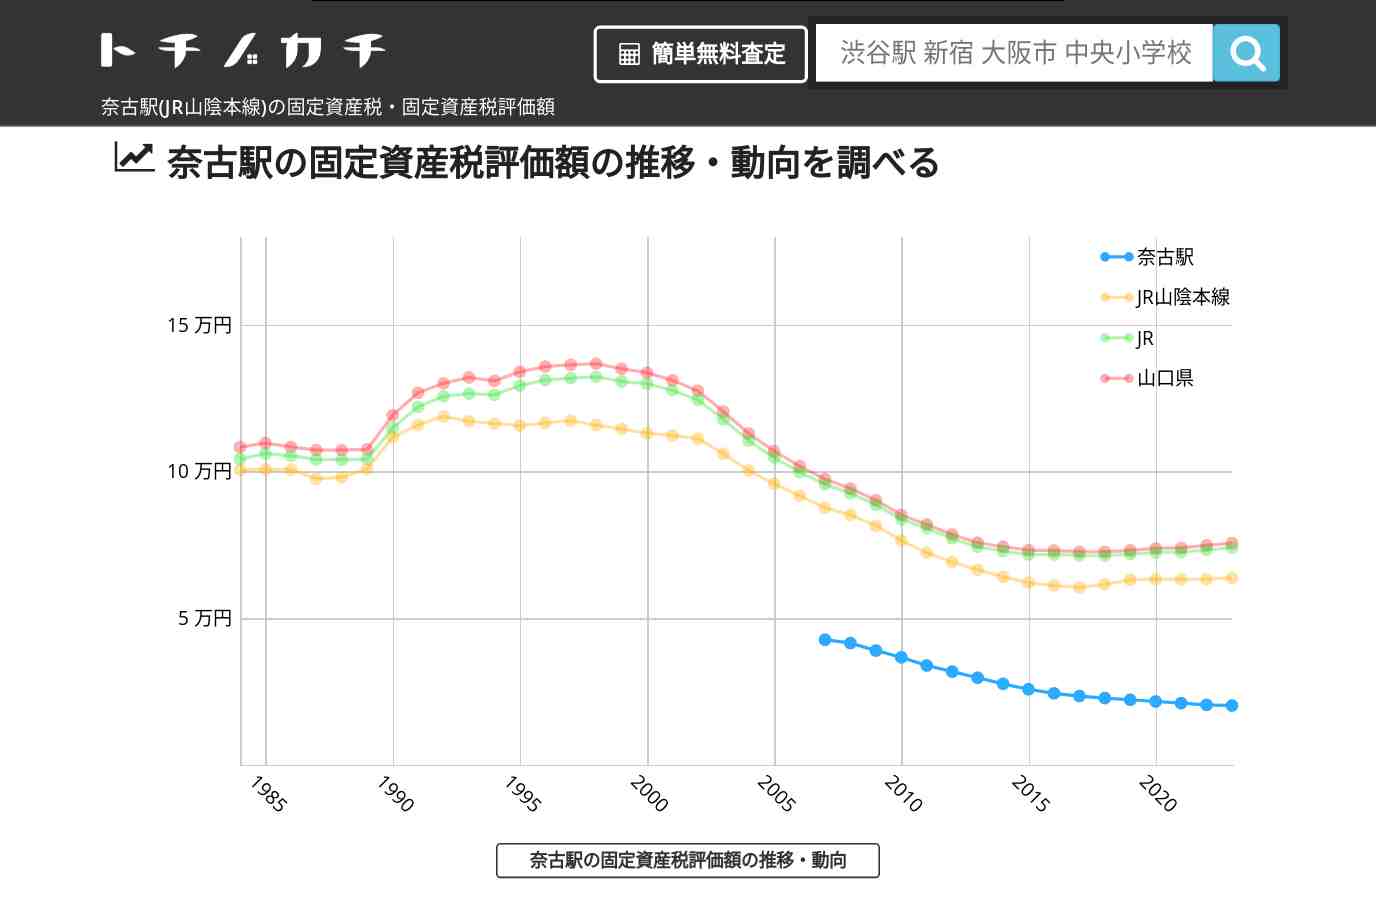 奈古駅(JR山陰本線)の固定資産税・固定資産税評価額 | トチノカチ